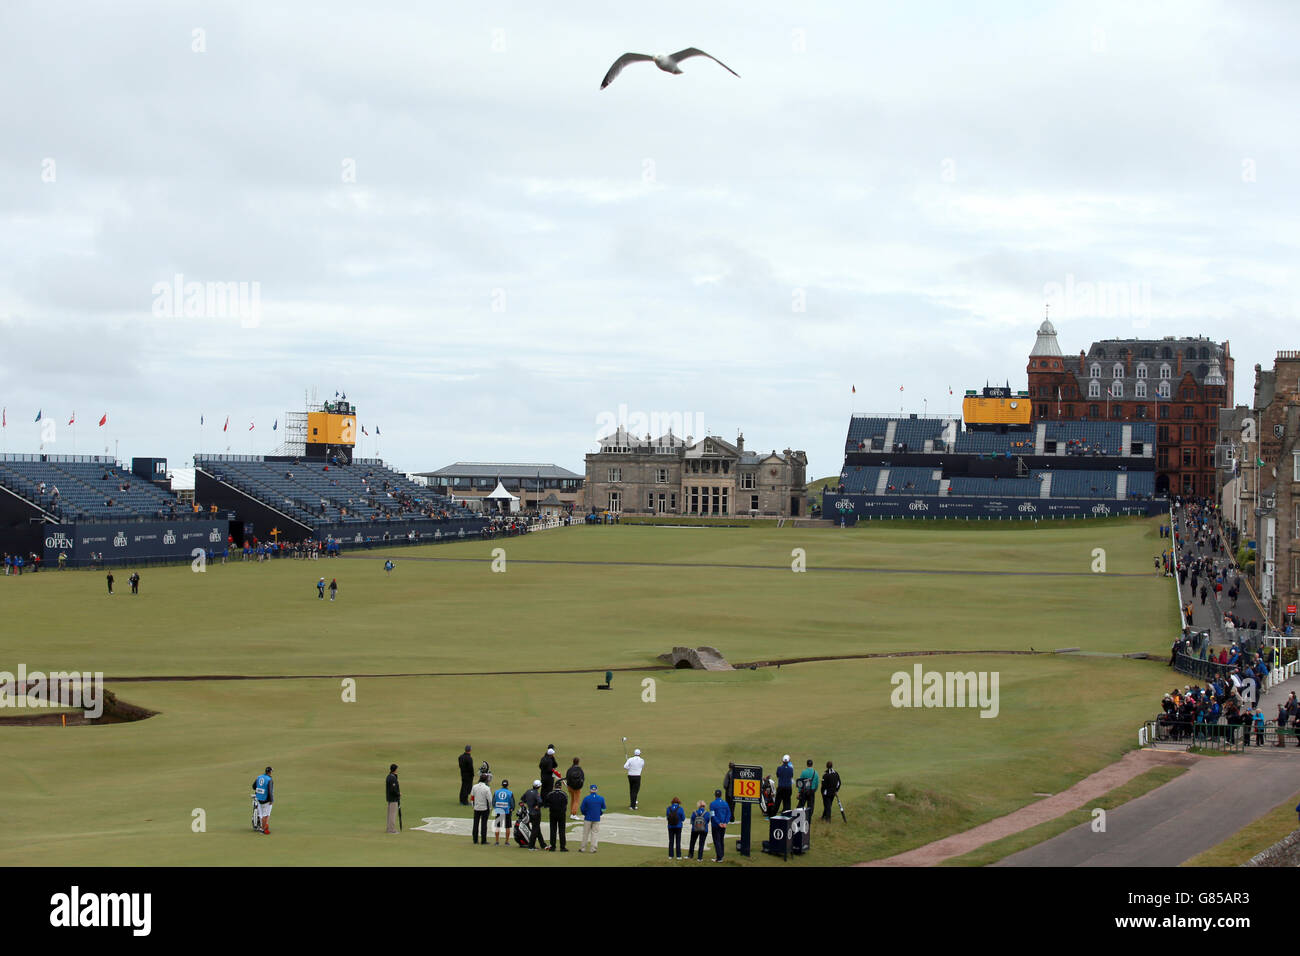 Une vue générale du jeu sur le 18e tee lors d'une journée d'entraînement avant le Championnat d'Open 2015 à St Andrews, Fife. Banque D'Images